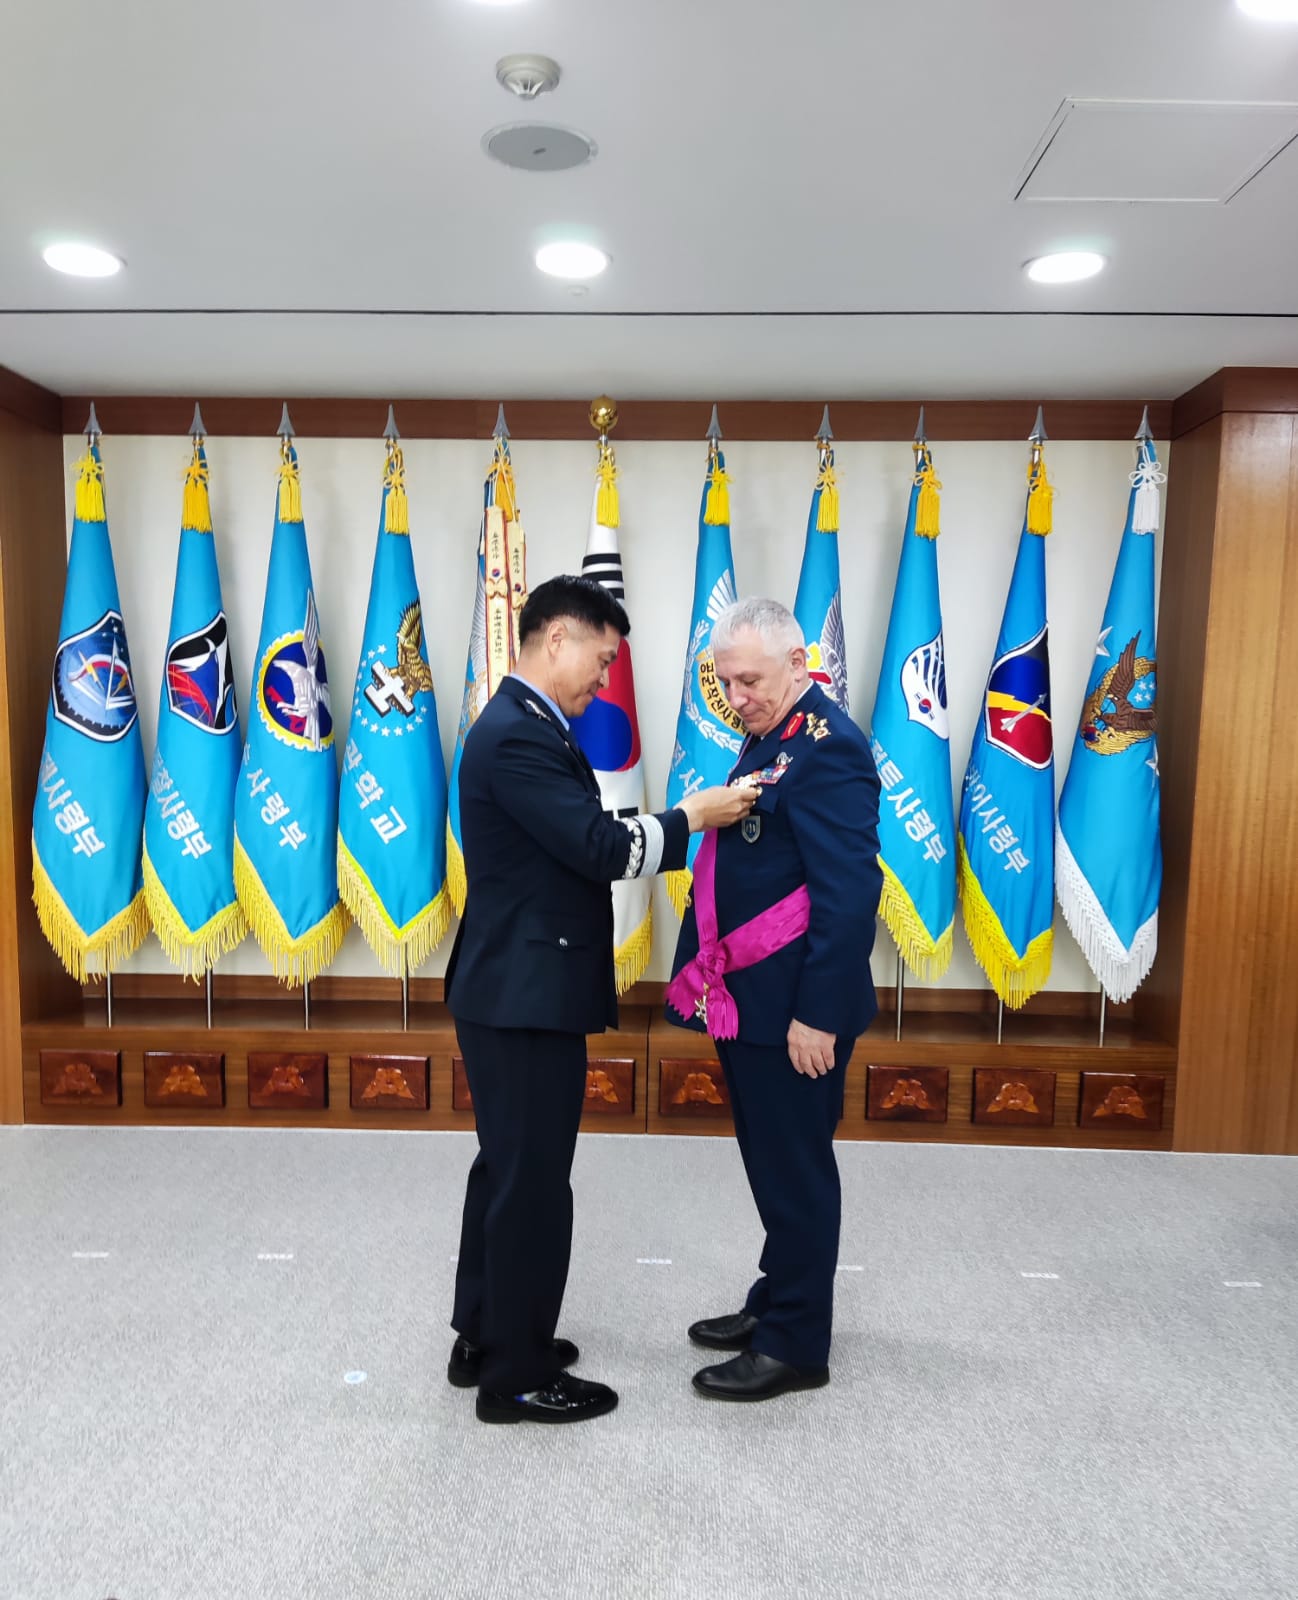 Orgeneral Kadıoğlu, Kore Hava Kuvvetleri Komutanı Orgeneral Youngsu ile görüştü